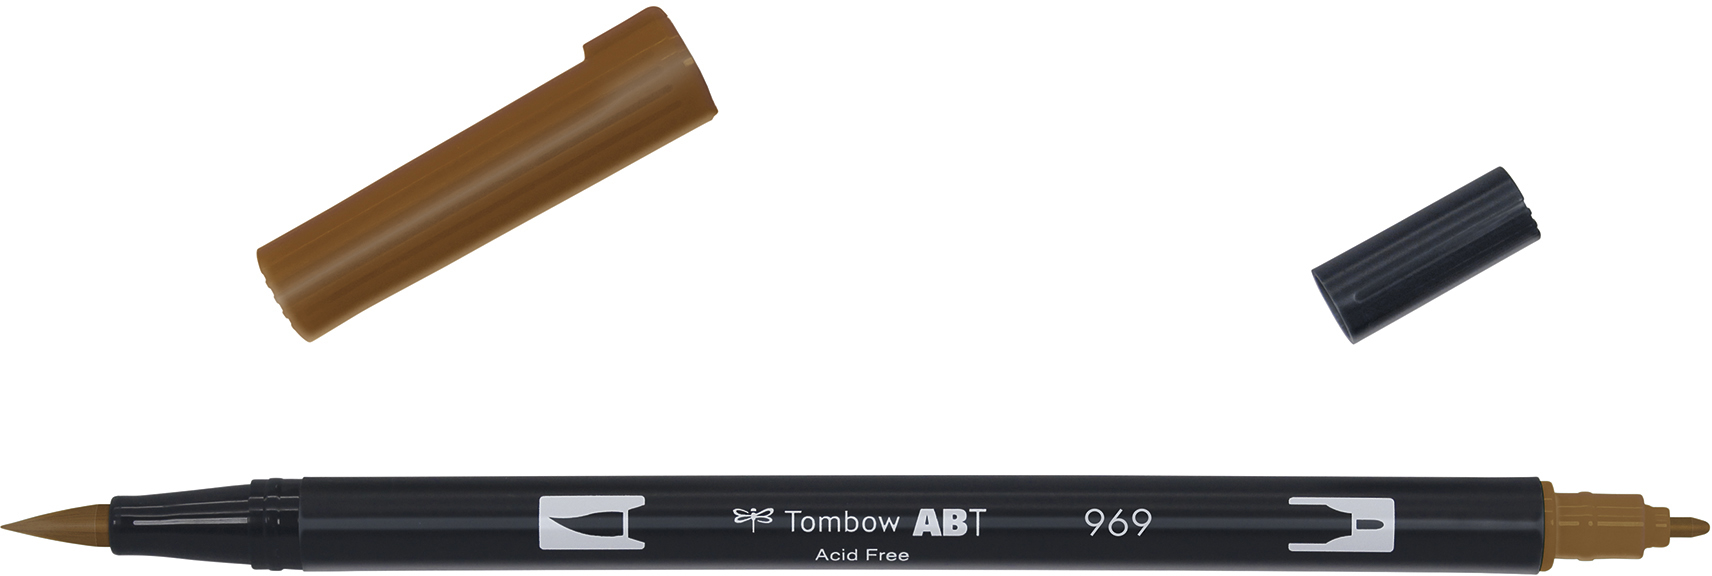 TOMBOW Dual Brush Pen ABT 969 chocolate